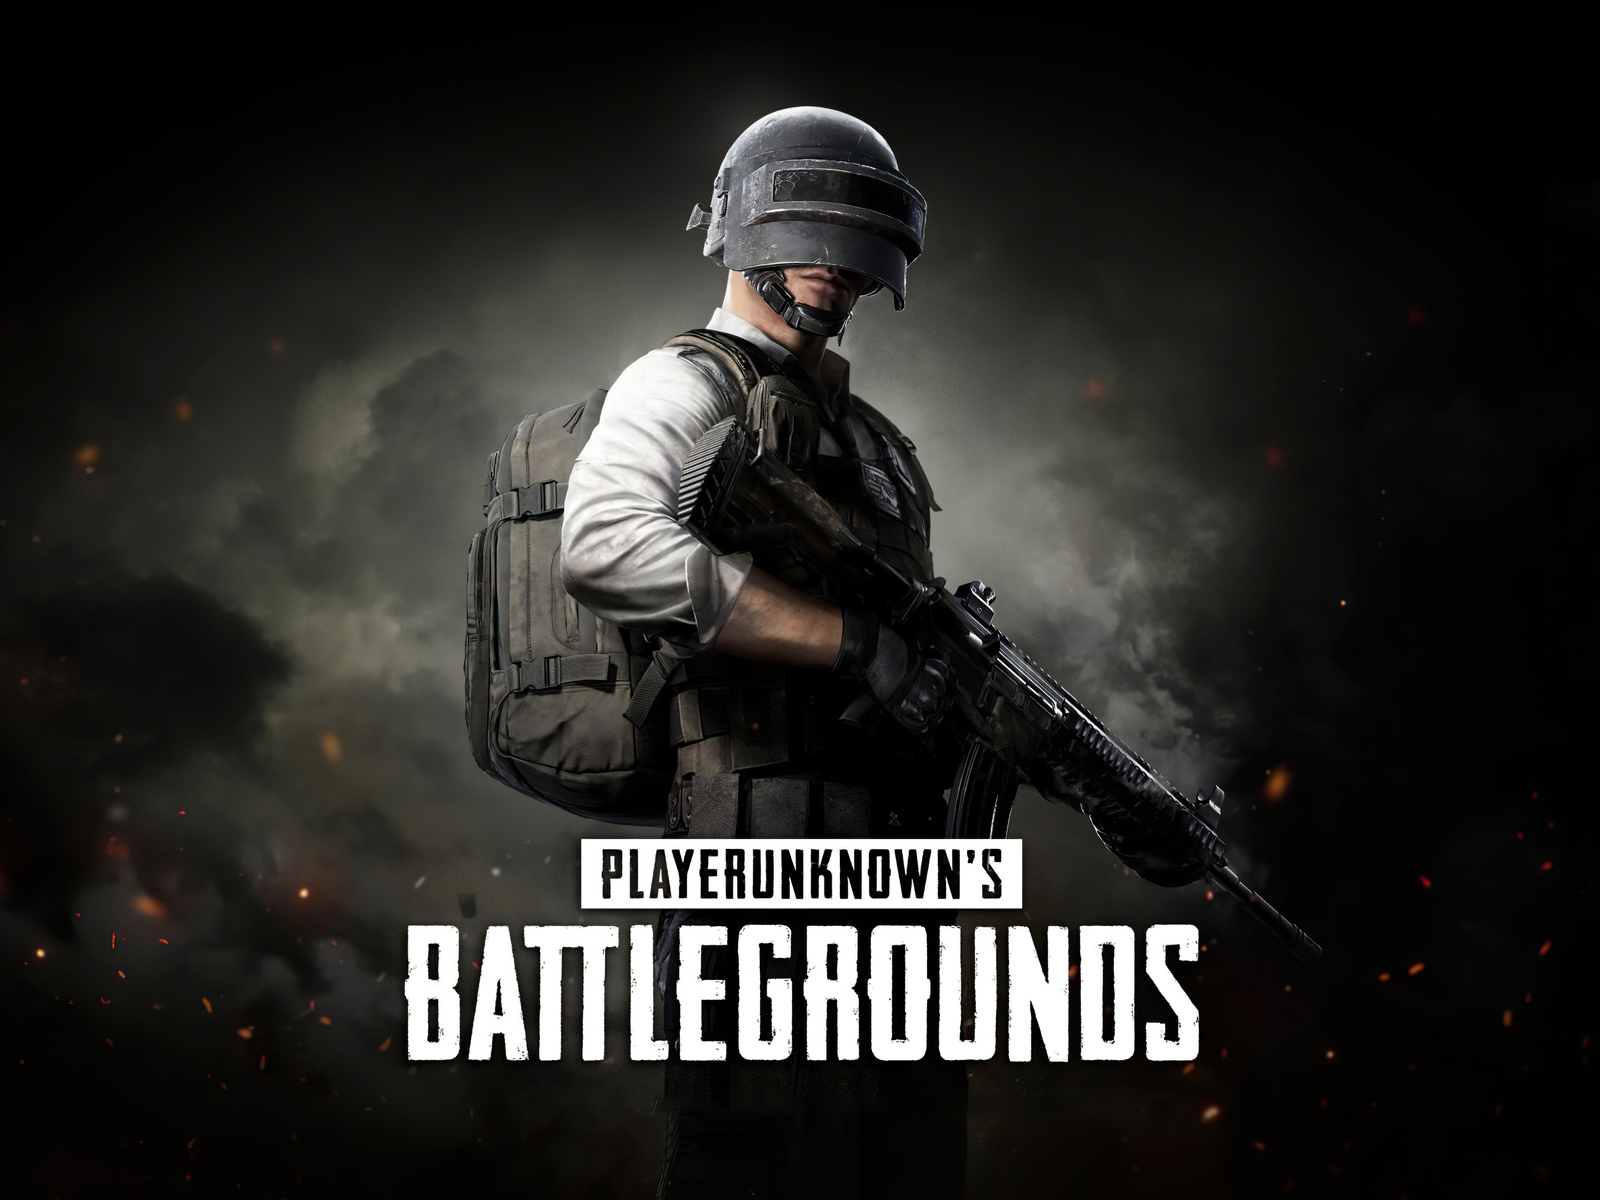 HD PlayerUnknown's Battlegrounds 2021 Wallpapers